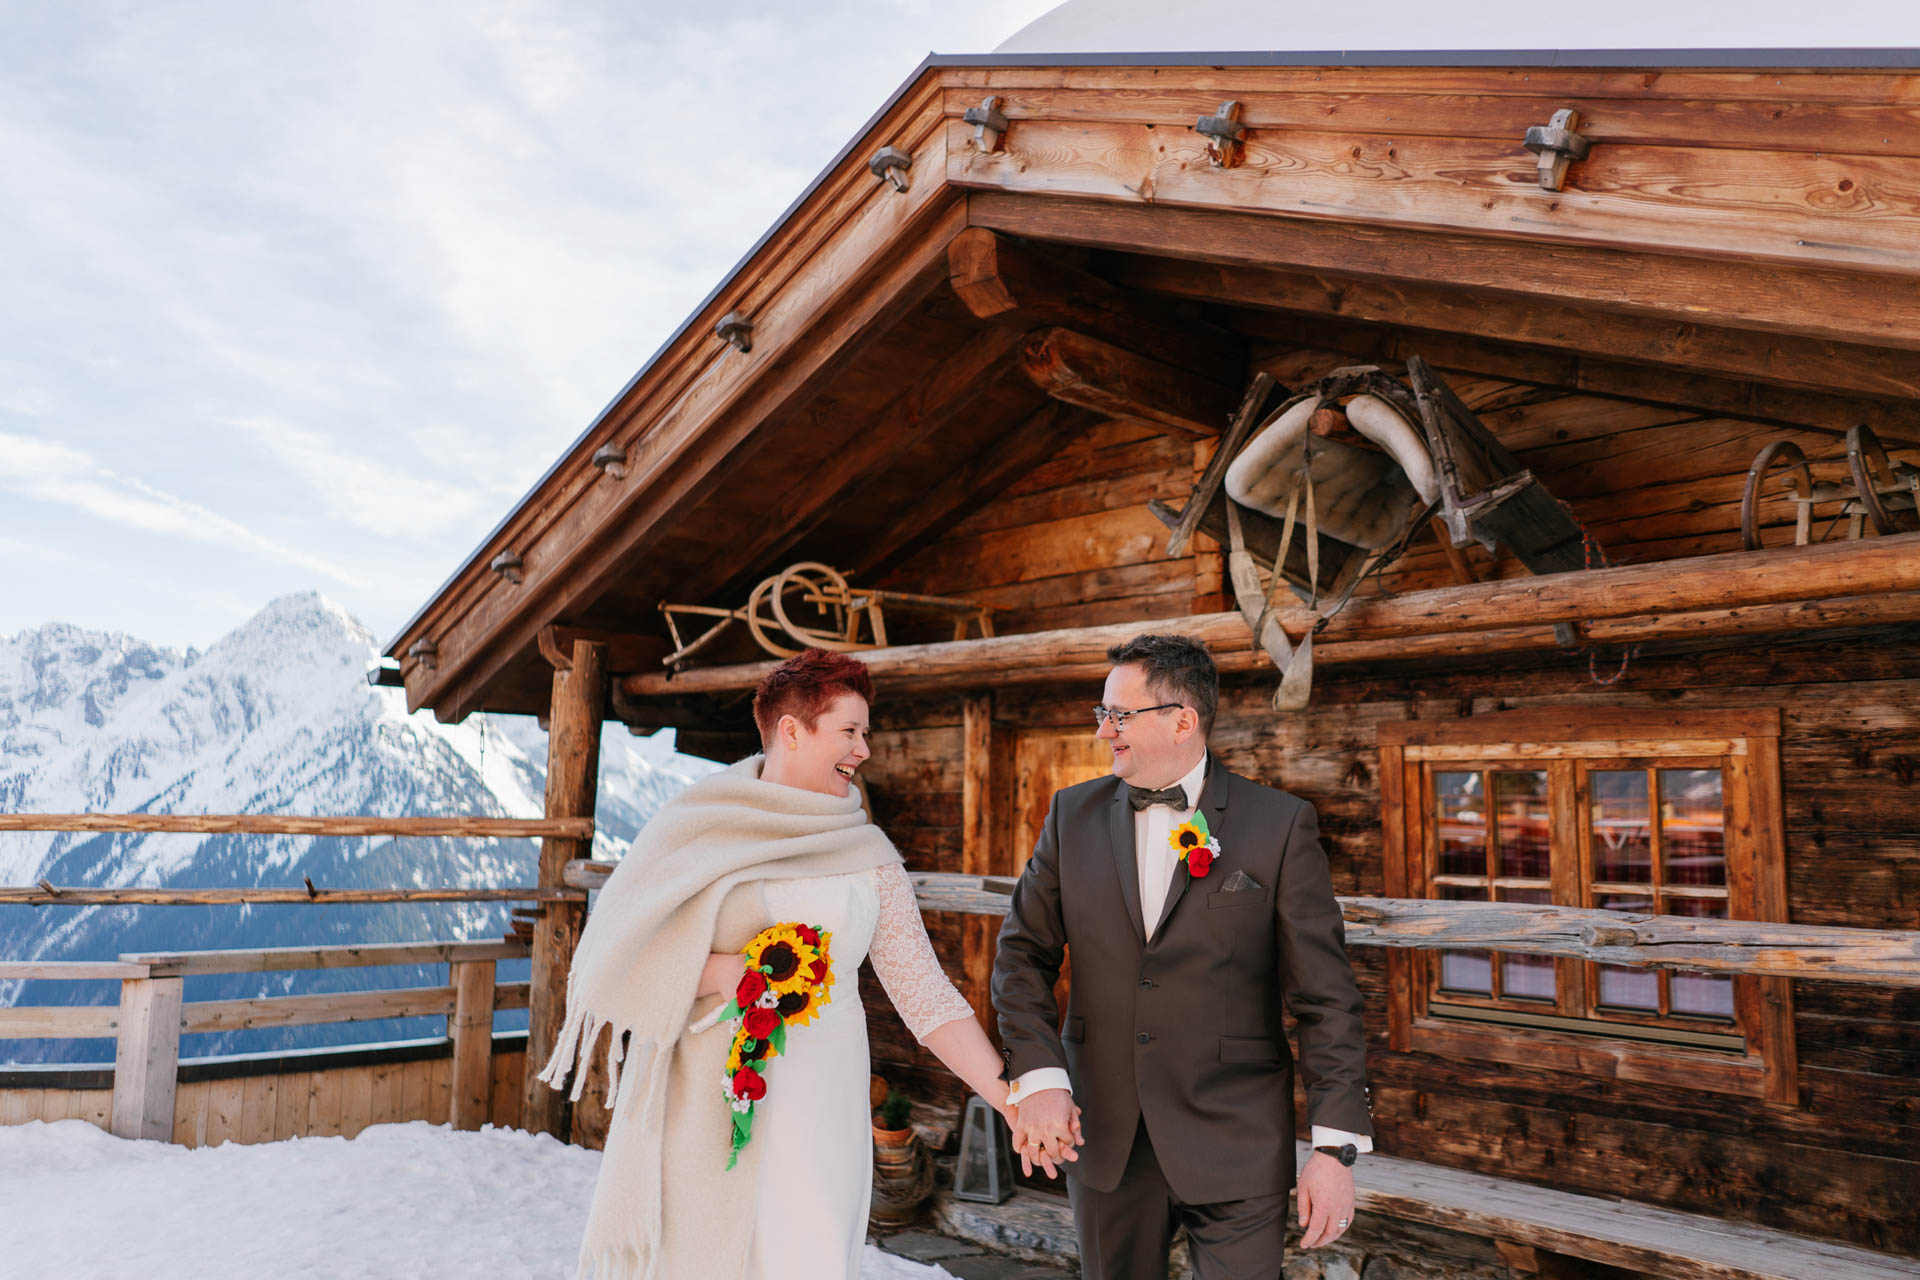 Brautpaar Hand in Hand vor Skihütte im Schnee